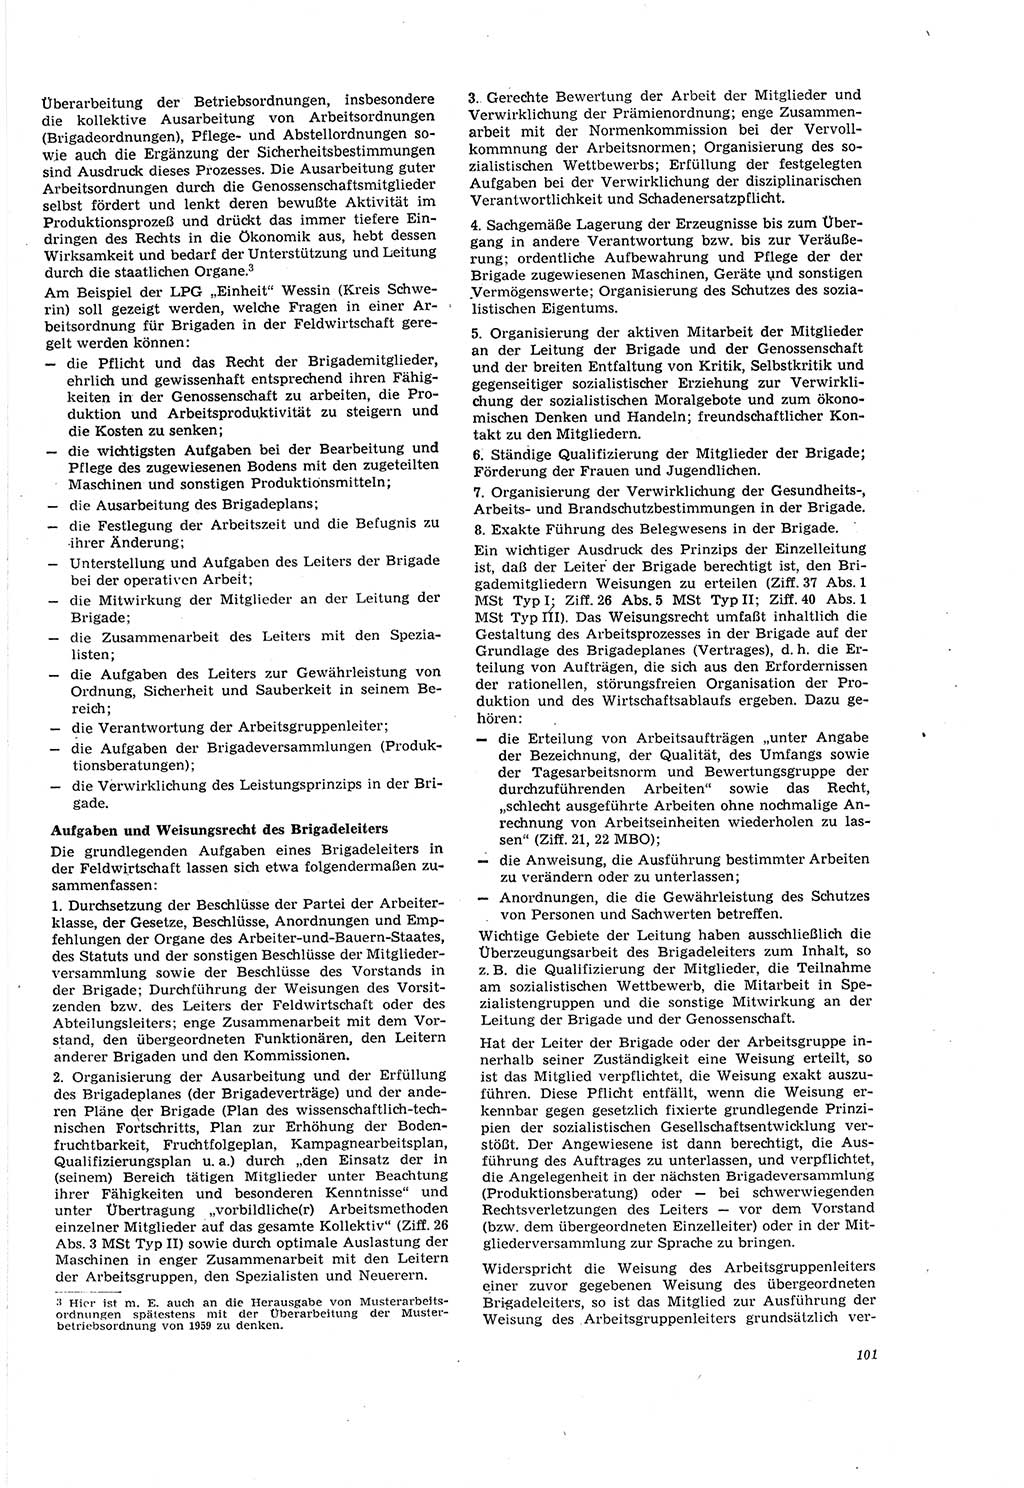 Neue Justiz (NJ), Zeitschrift für Recht und Rechtswissenschaft [Deutsche Demokratische Republik (DDR)], 20. Jahrgang 1966, Seite 101 (NJ DDR 1966, S. 101)